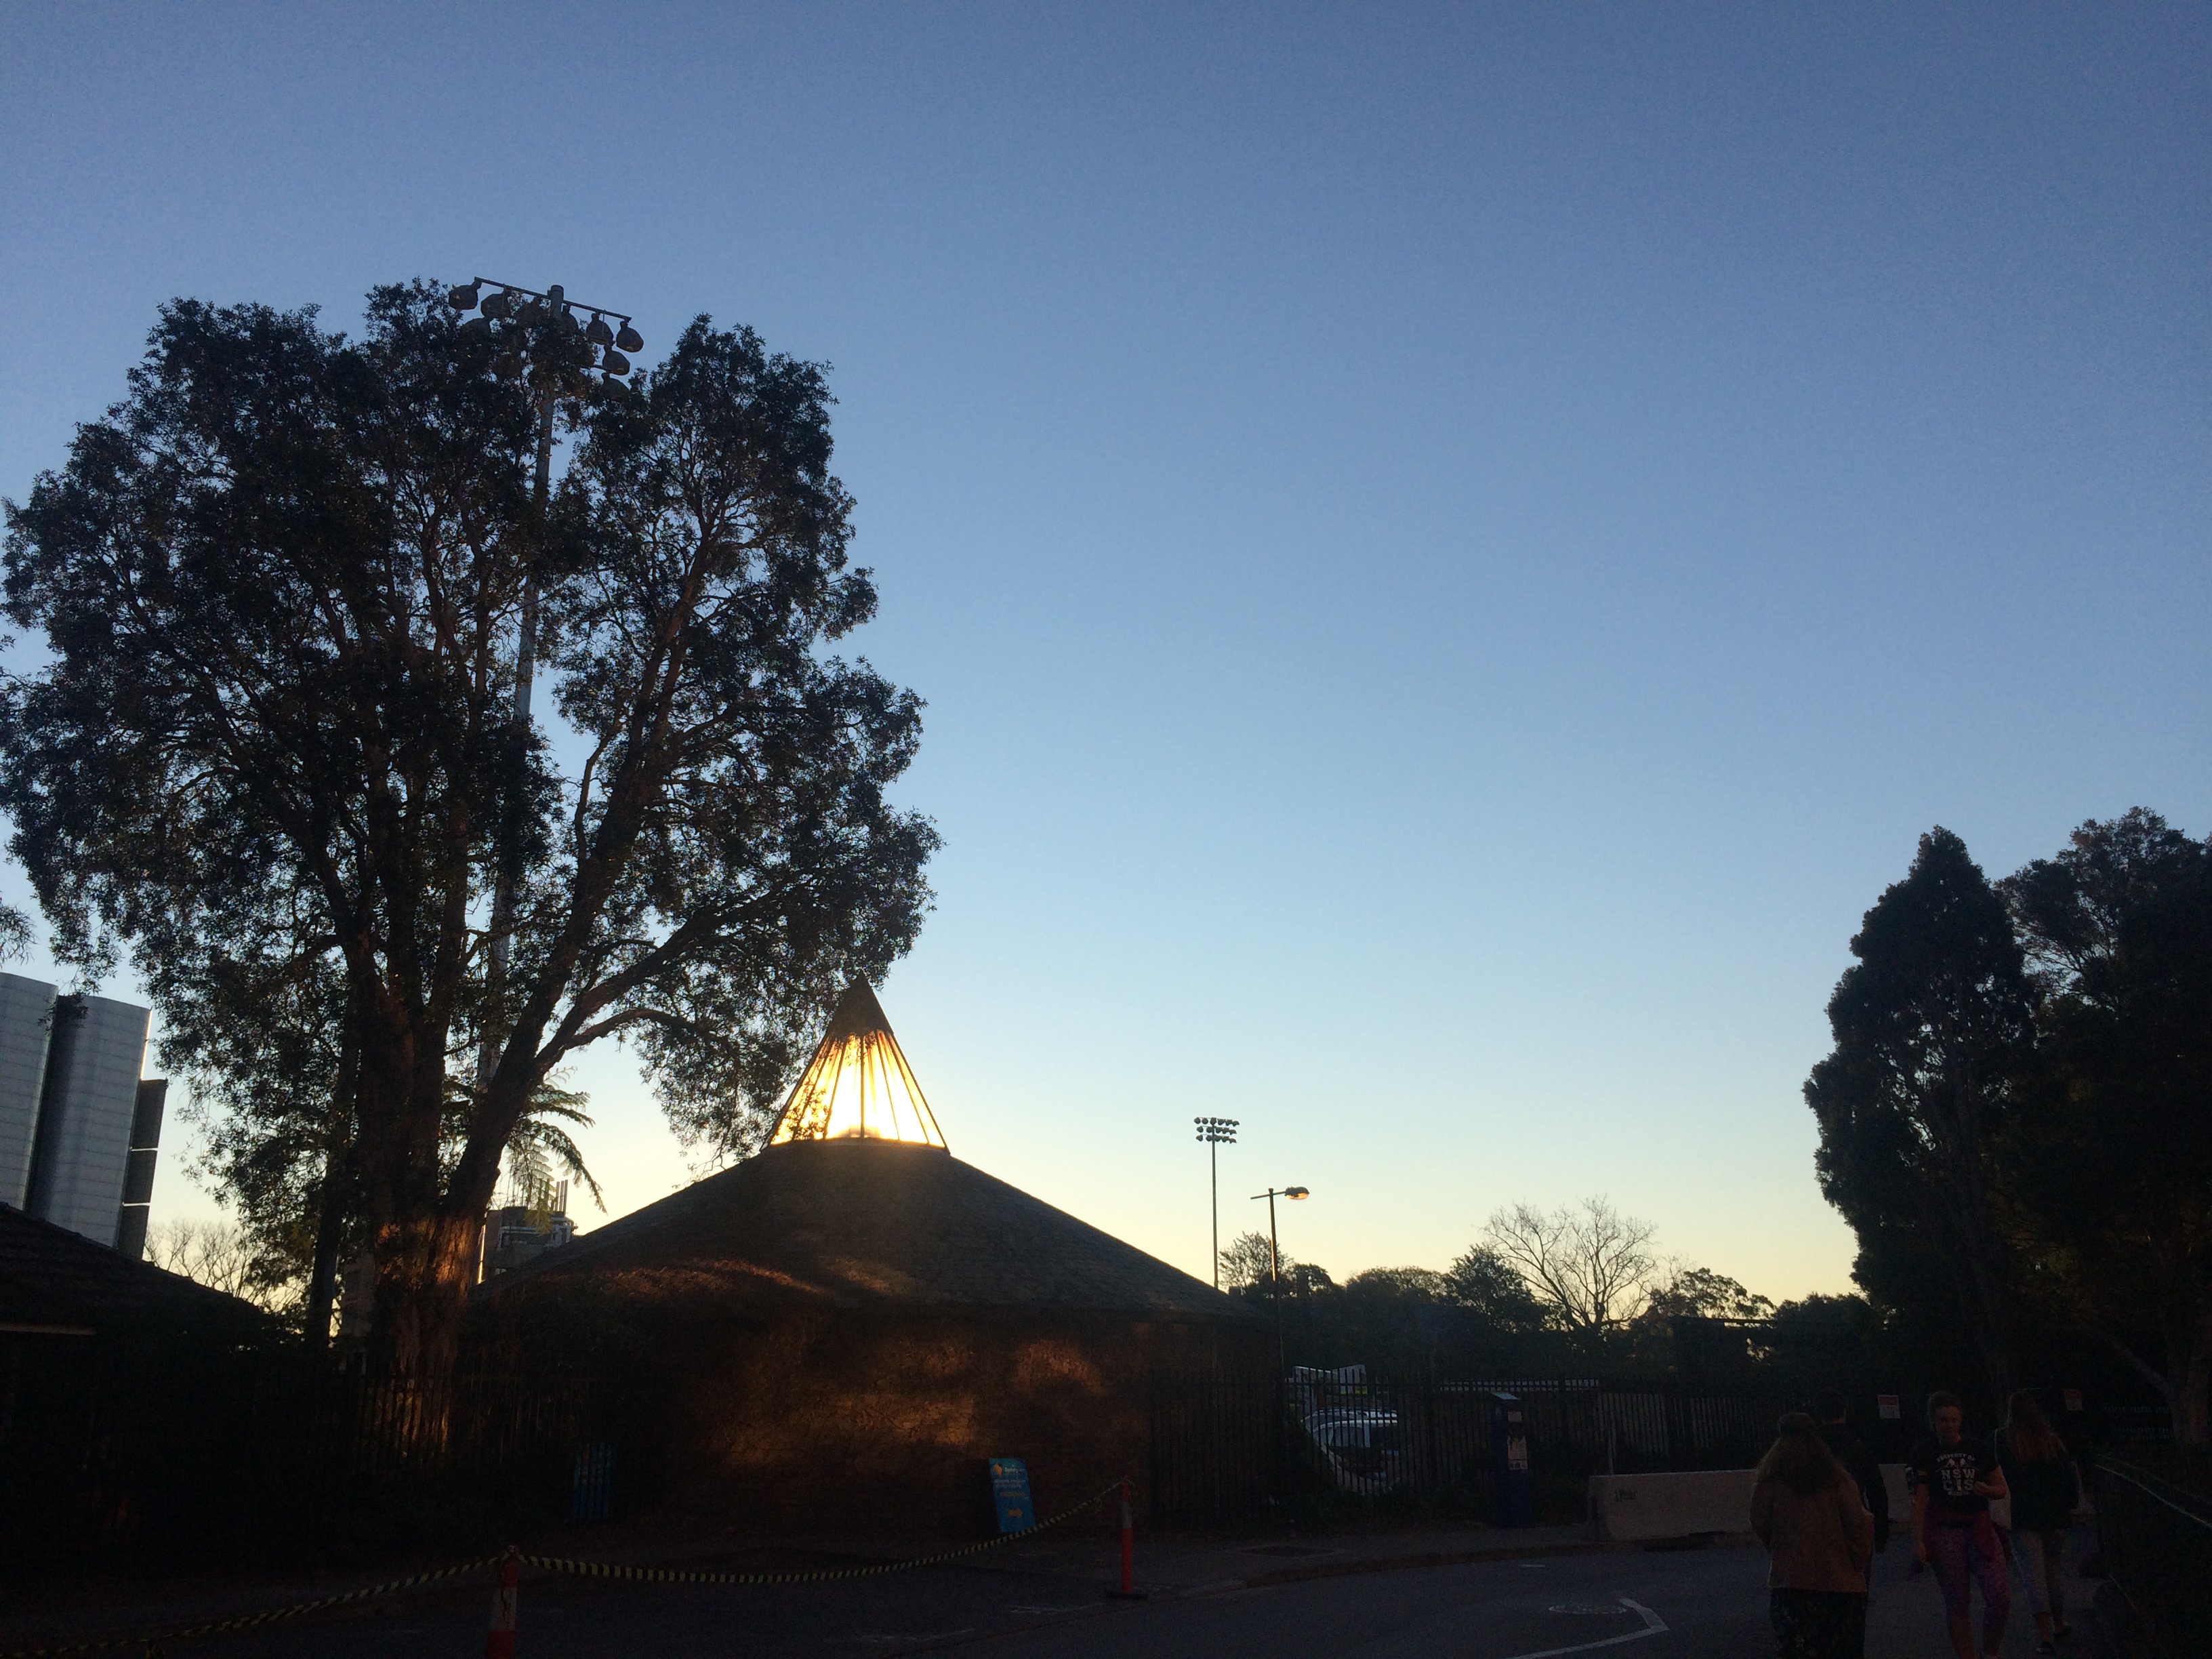 The dusk of Sydney Uni